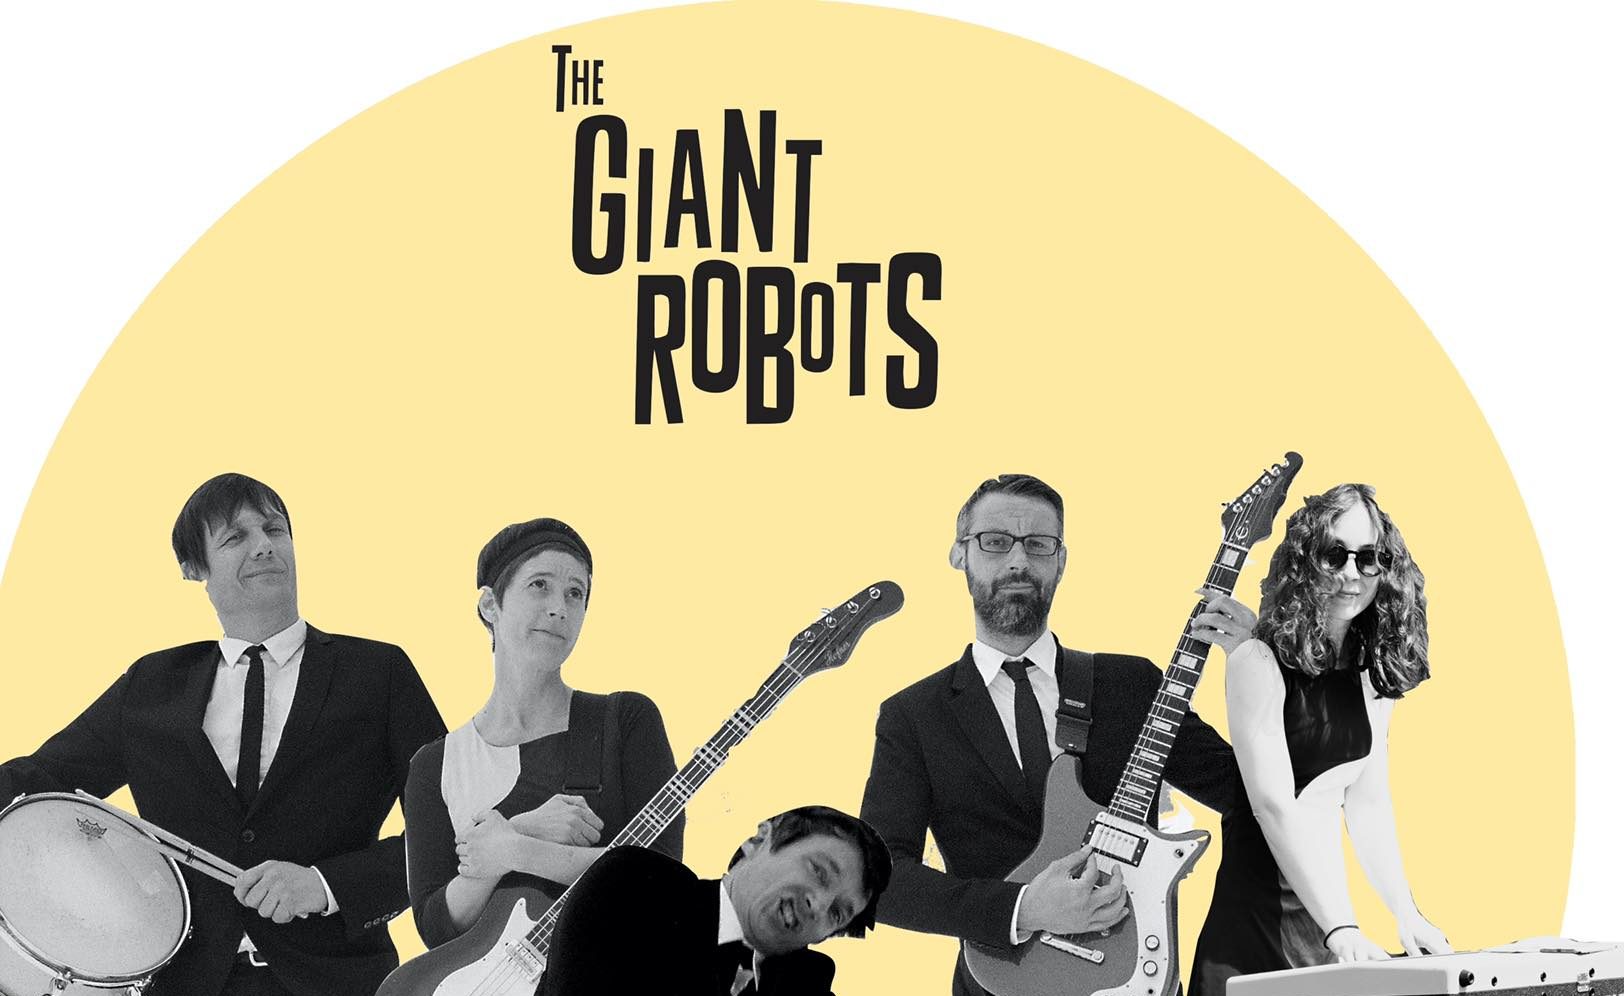 La banda suiza The Giant Robots trae a El Tararí, el mejor Rock & Roll con esencias de los sesenta 1